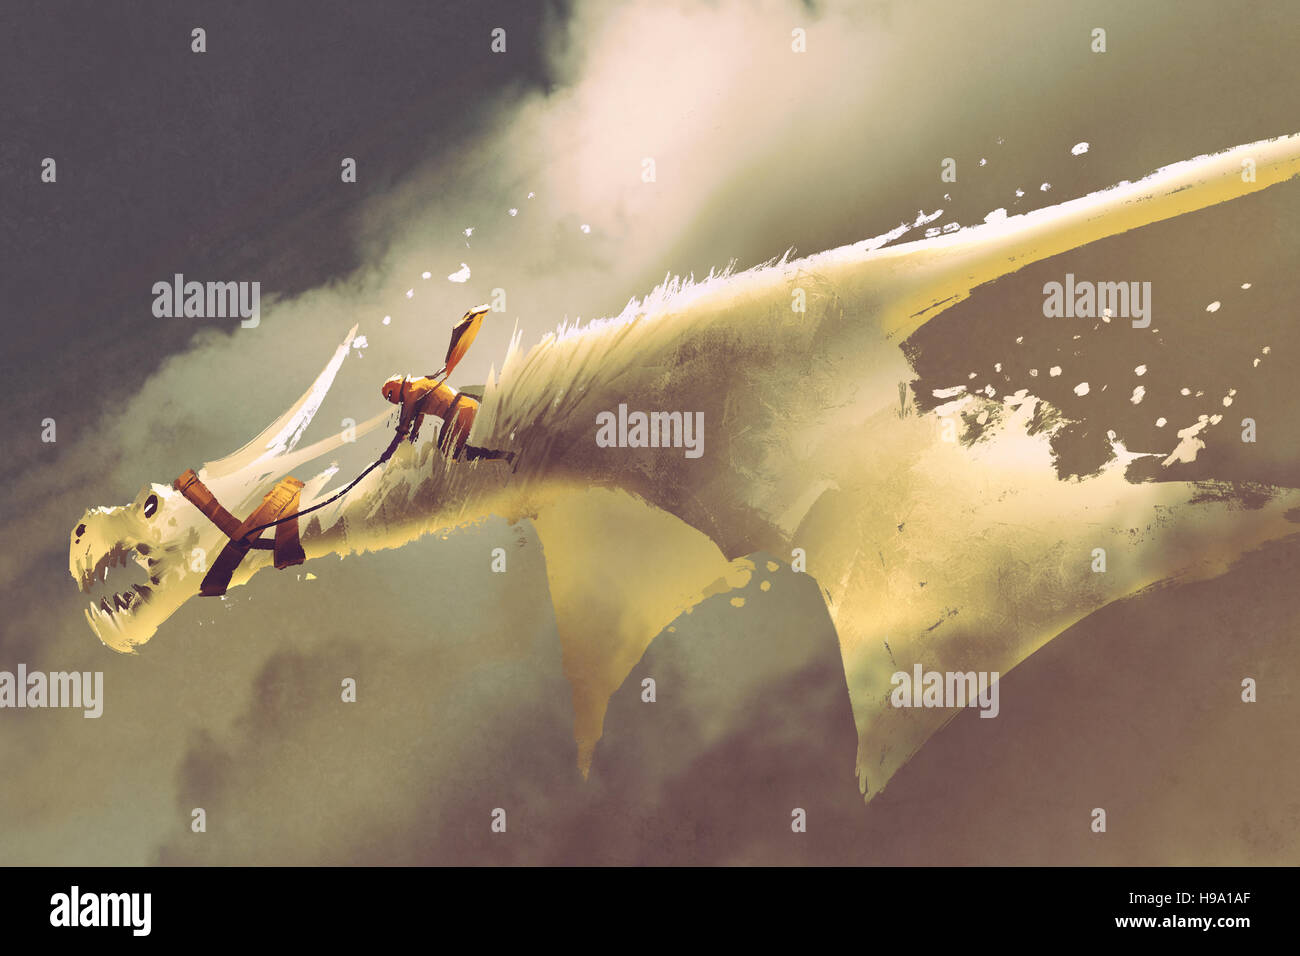 Mann reitet auf den weißen fliegenden Drachen gegen einen bewölkten Himmel, Illustration, Malerei Stockfoto